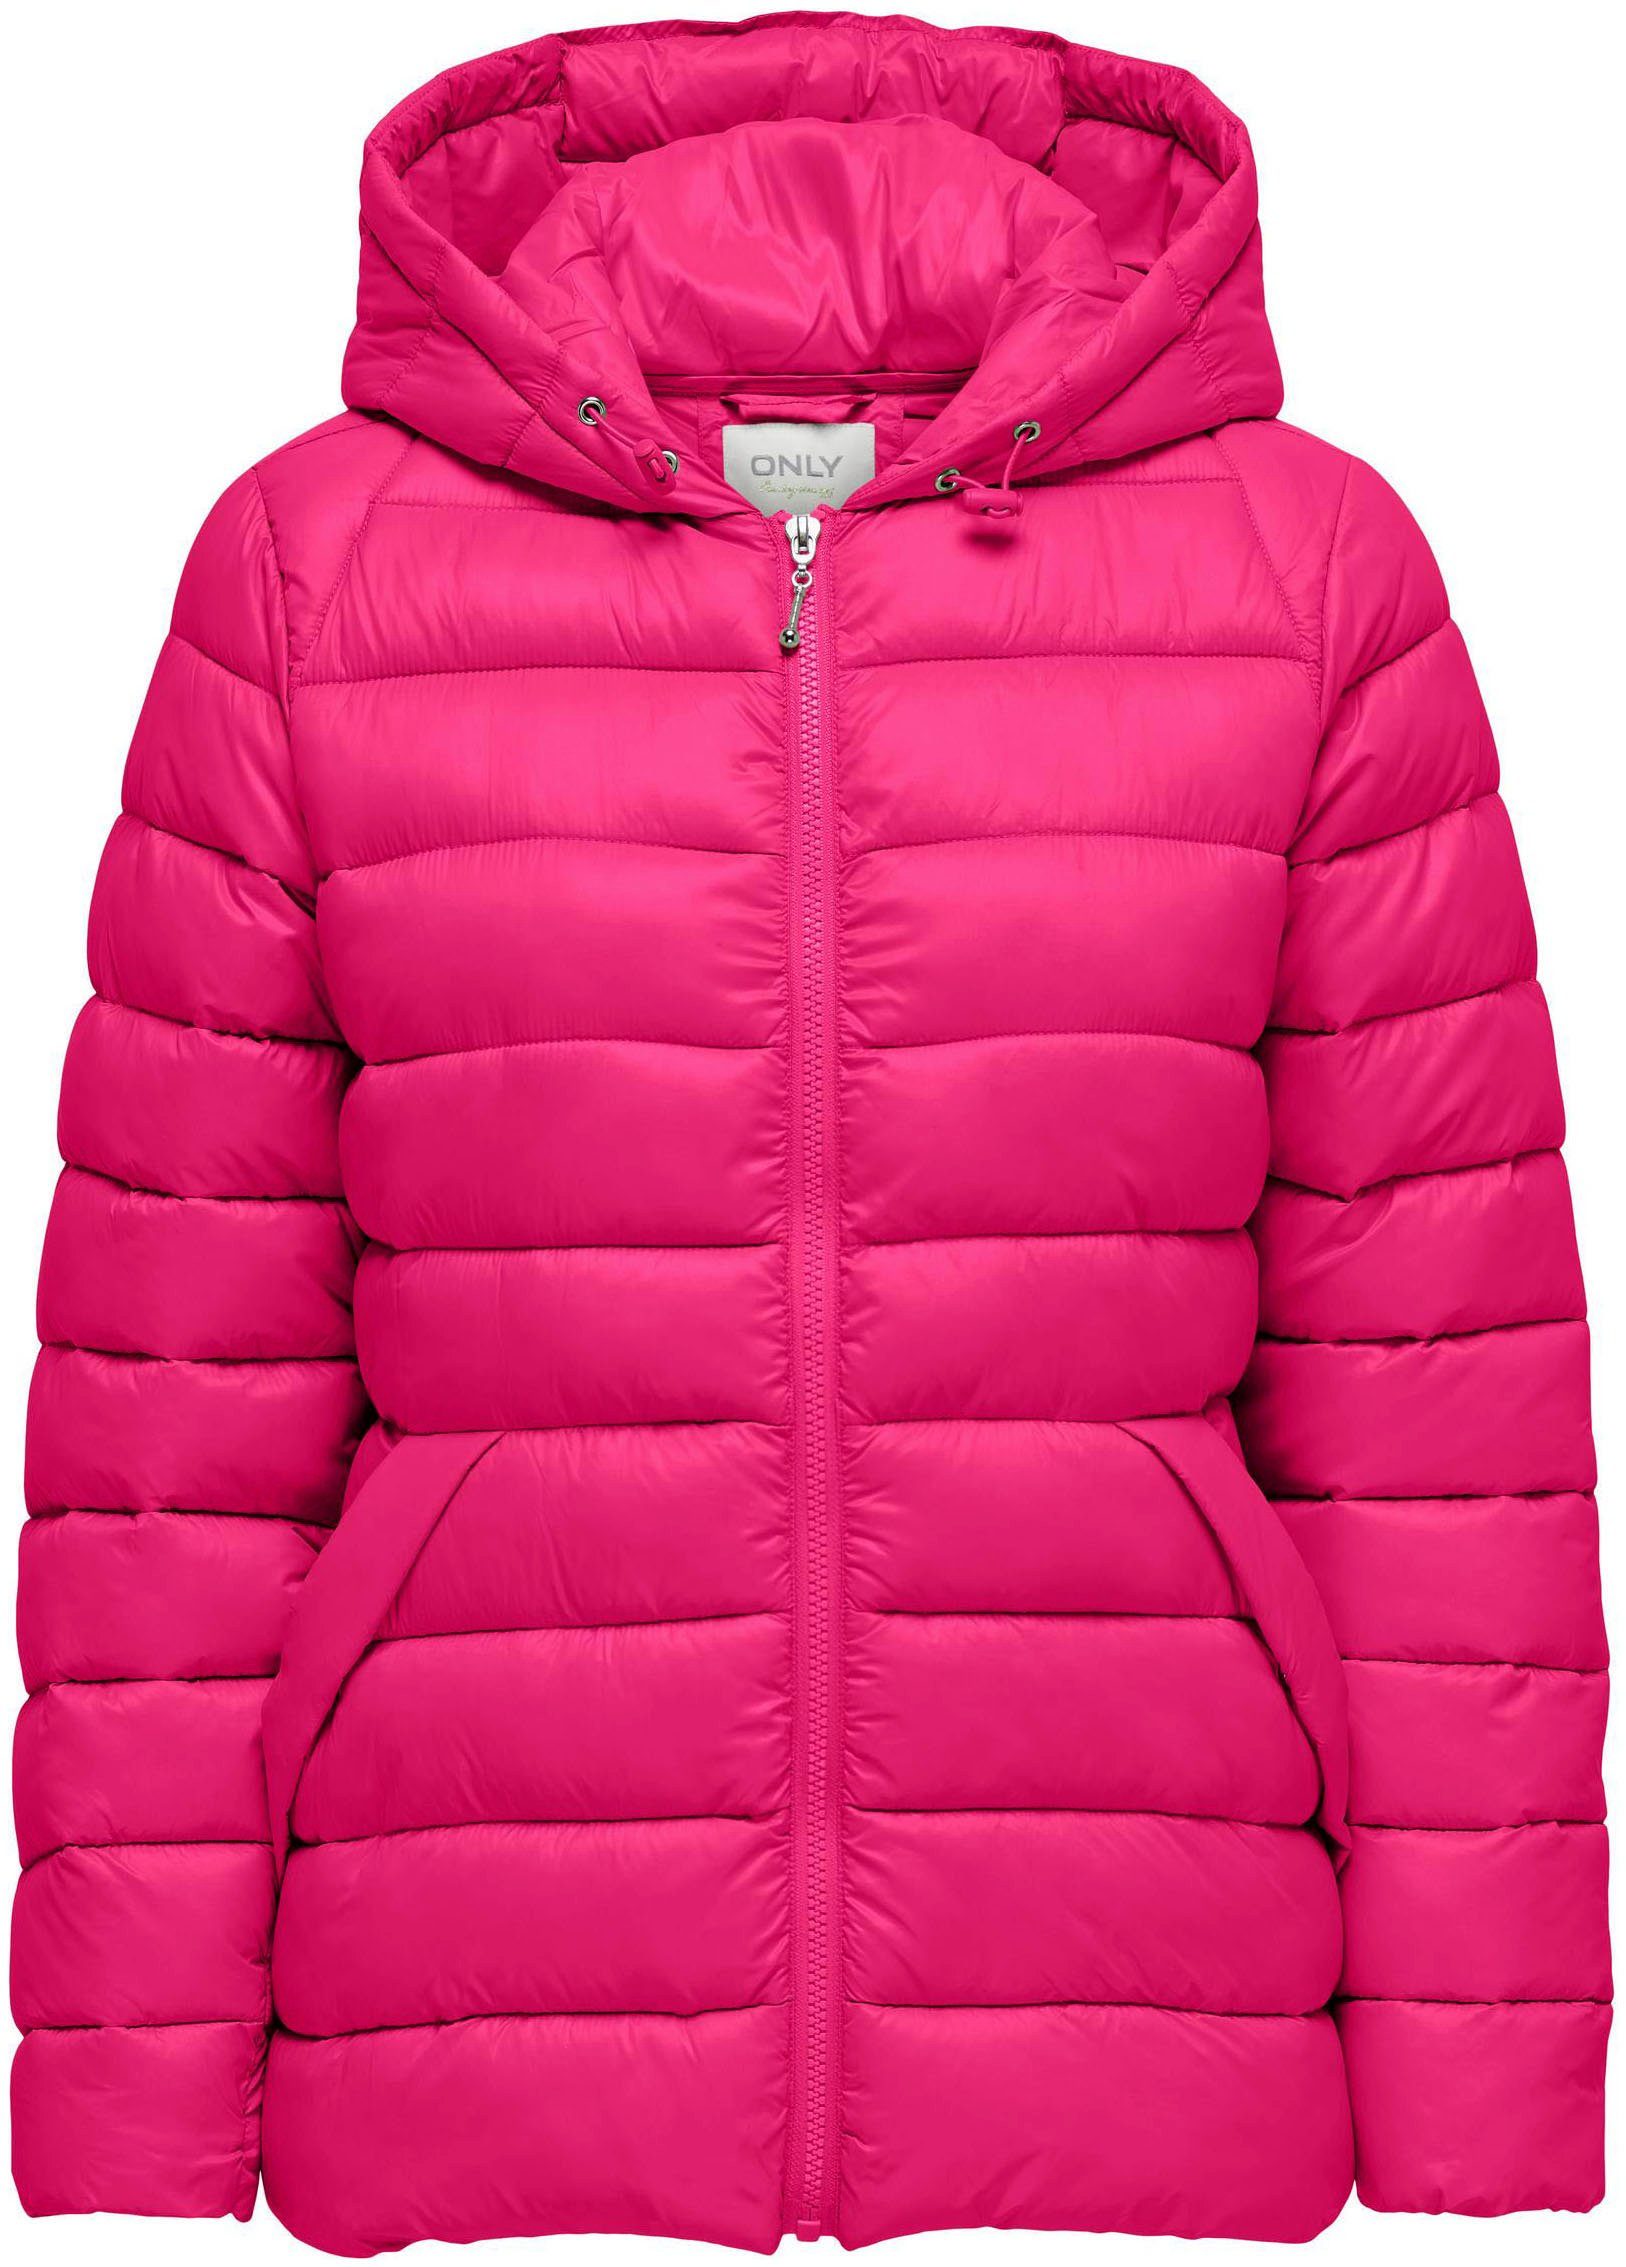 Rosa Only Jacken für Damen kaufen » Pinke Only Jacken | OTTO